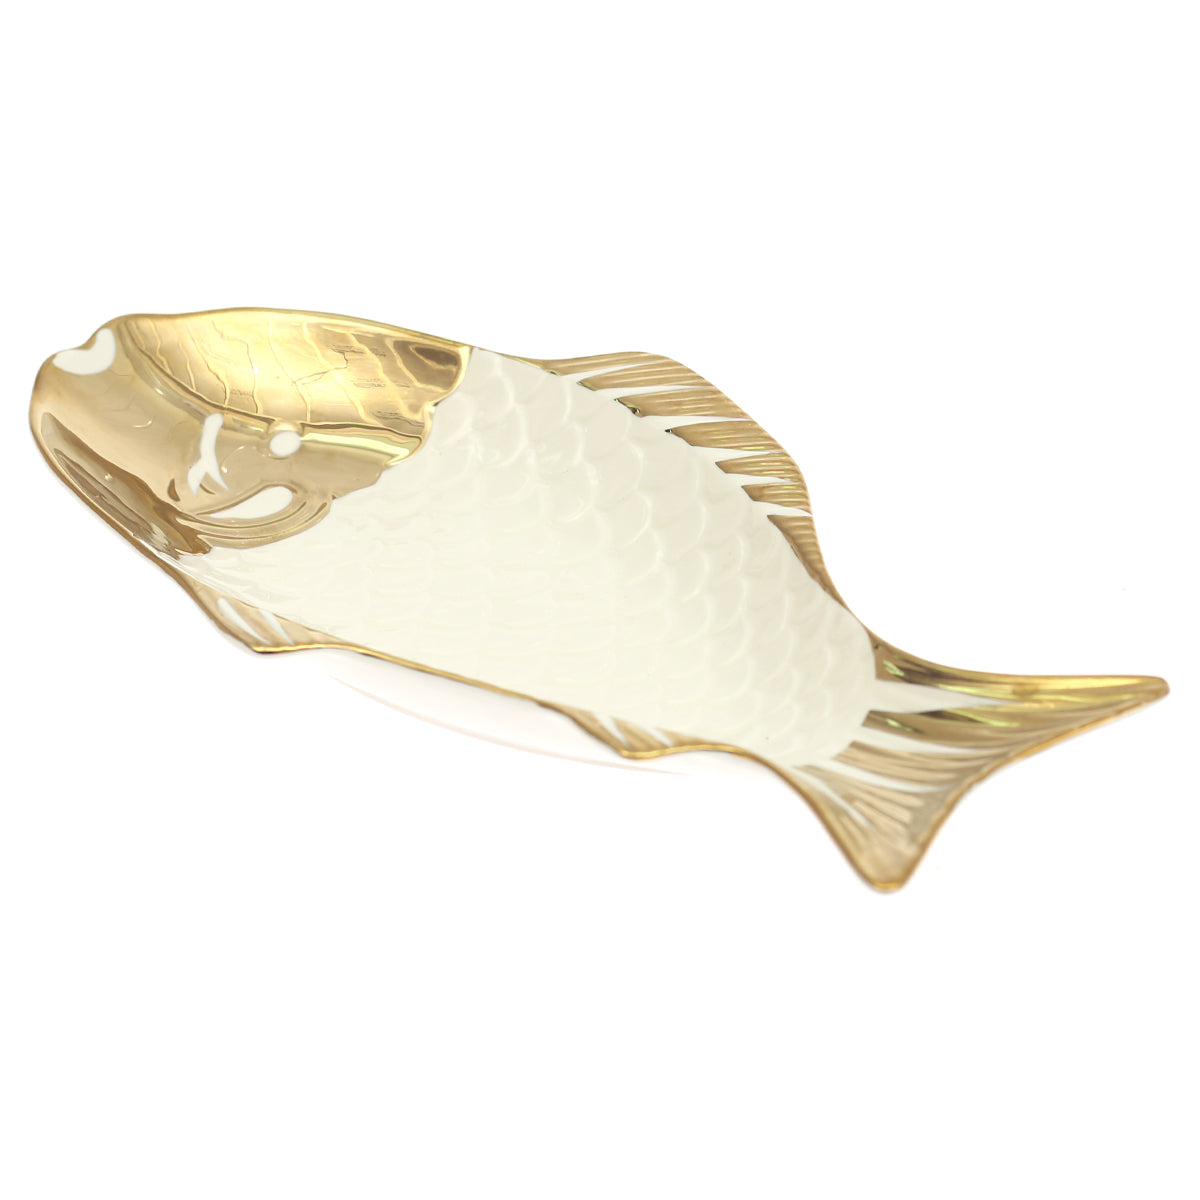 FISH PLATTER 39.5x24.5x4.5 1003-158